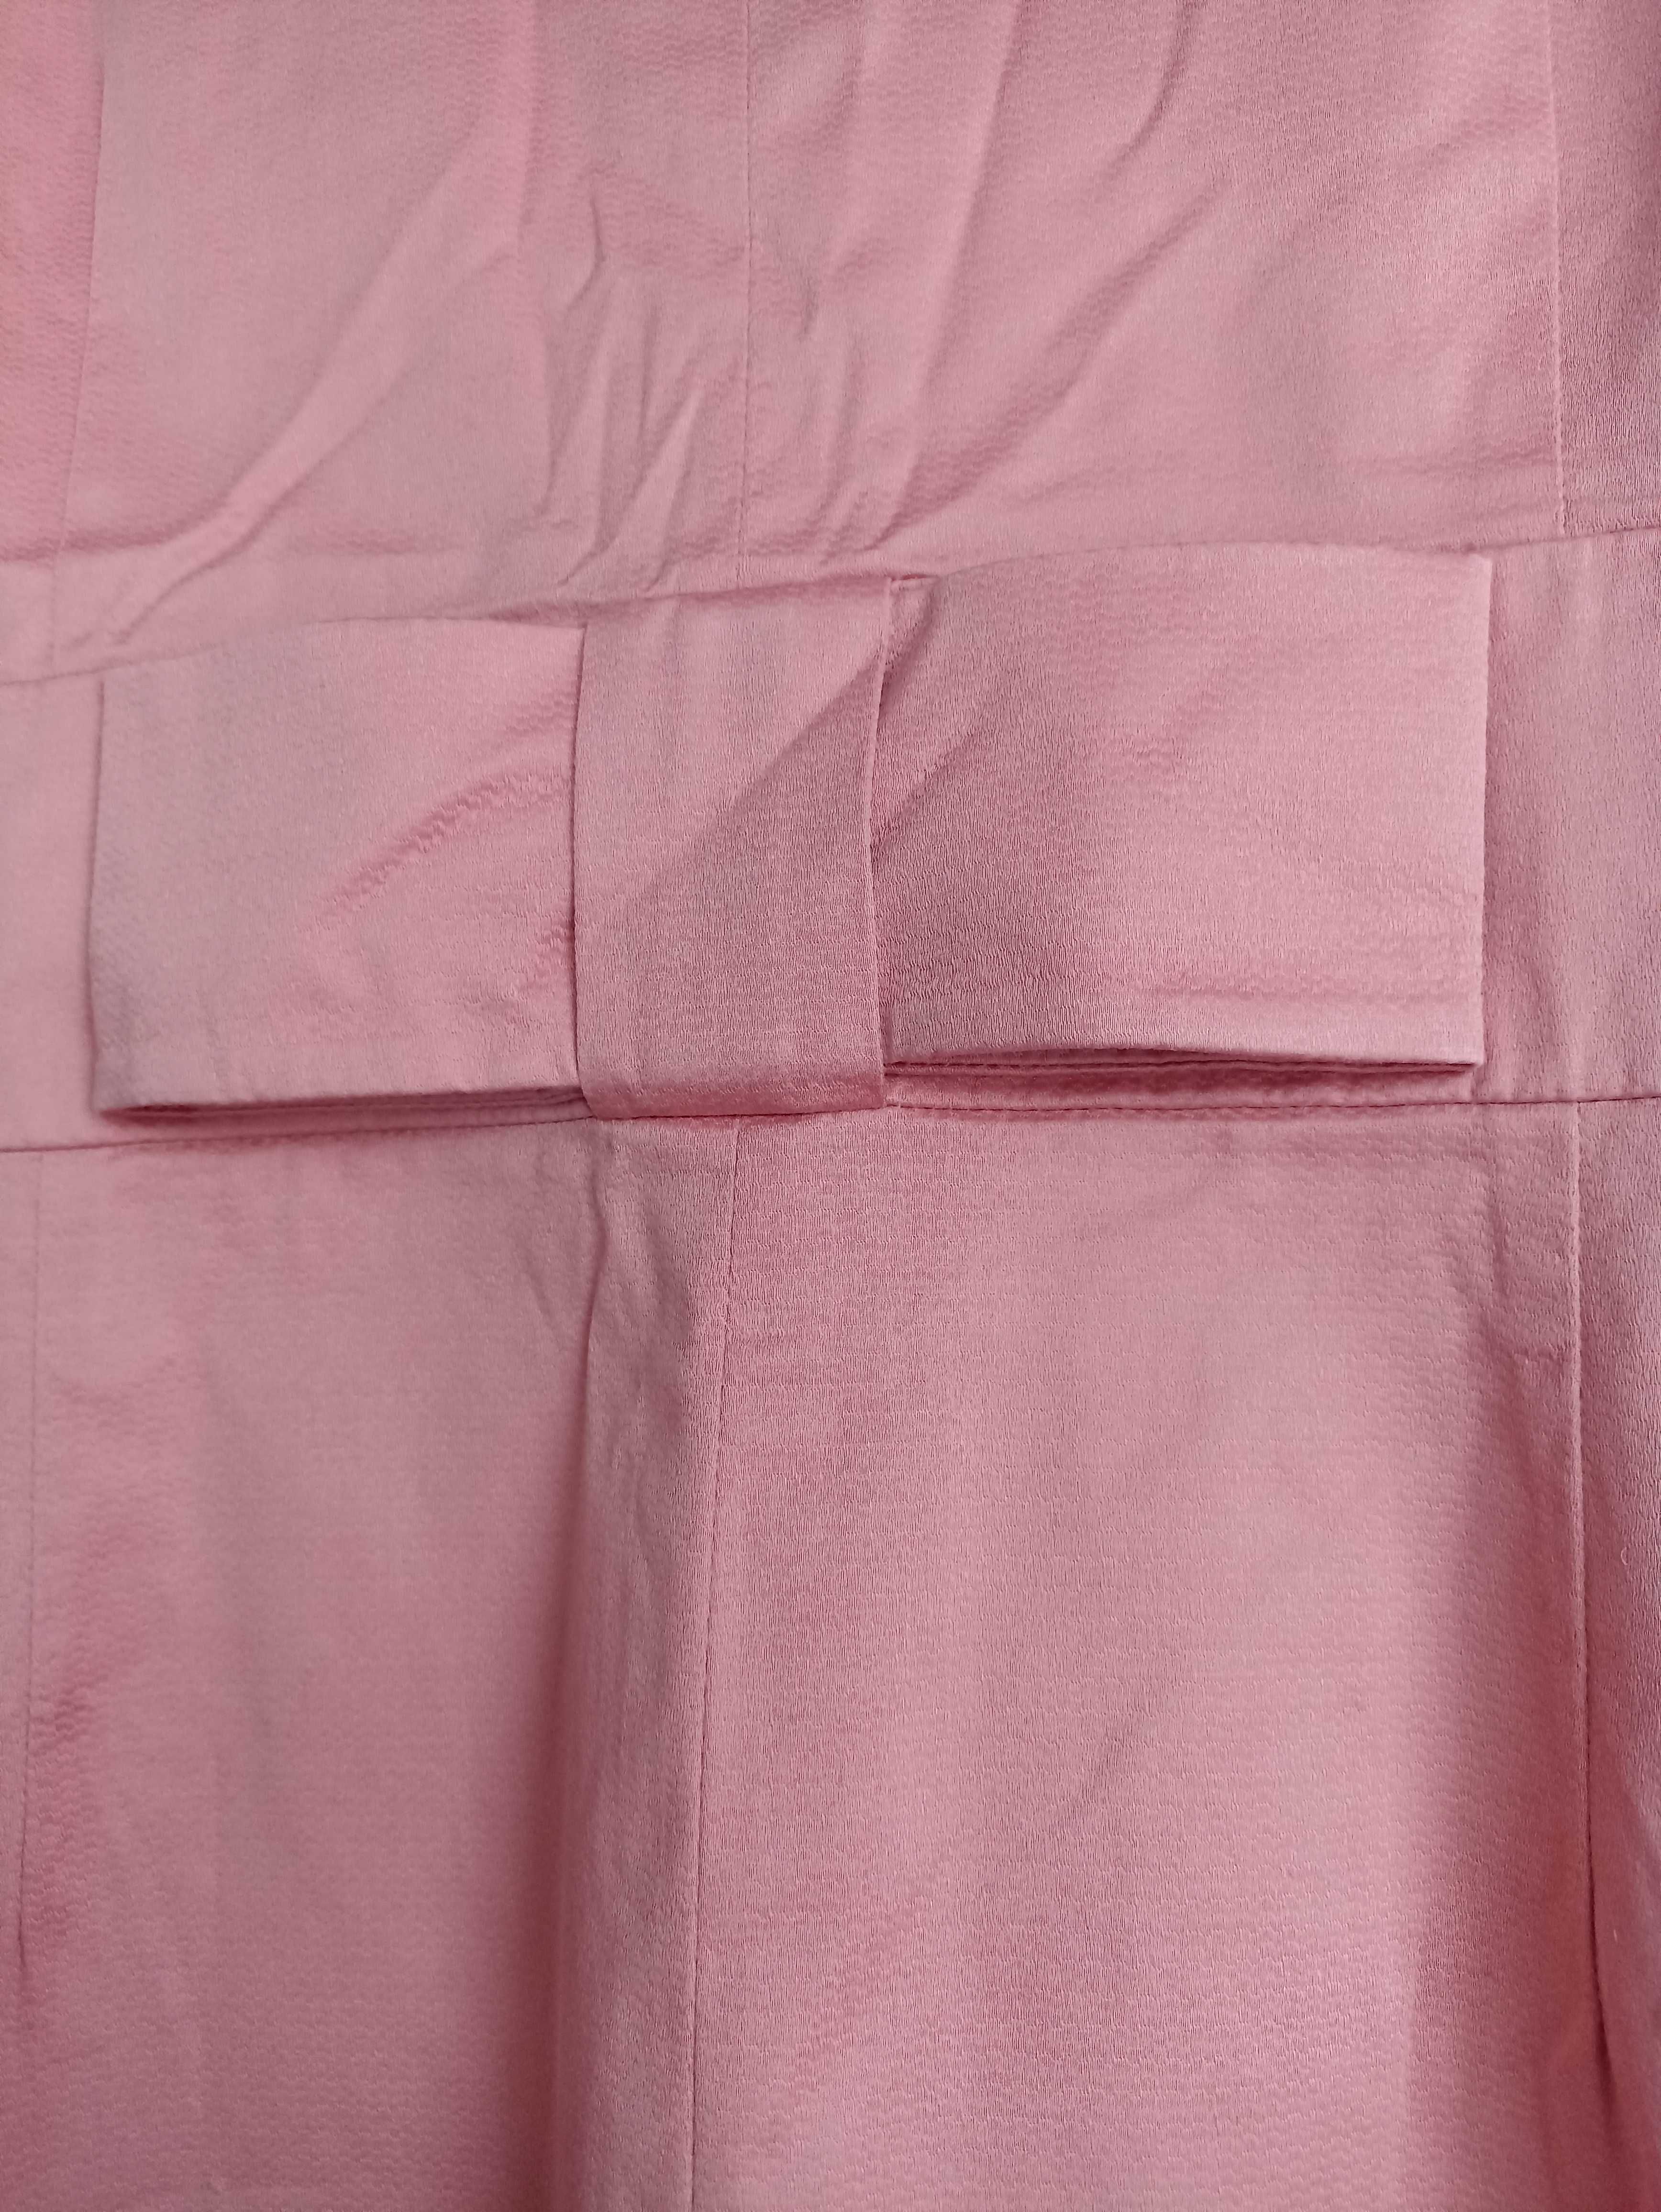 Vestido senhora rosa pêssego tamanho 38